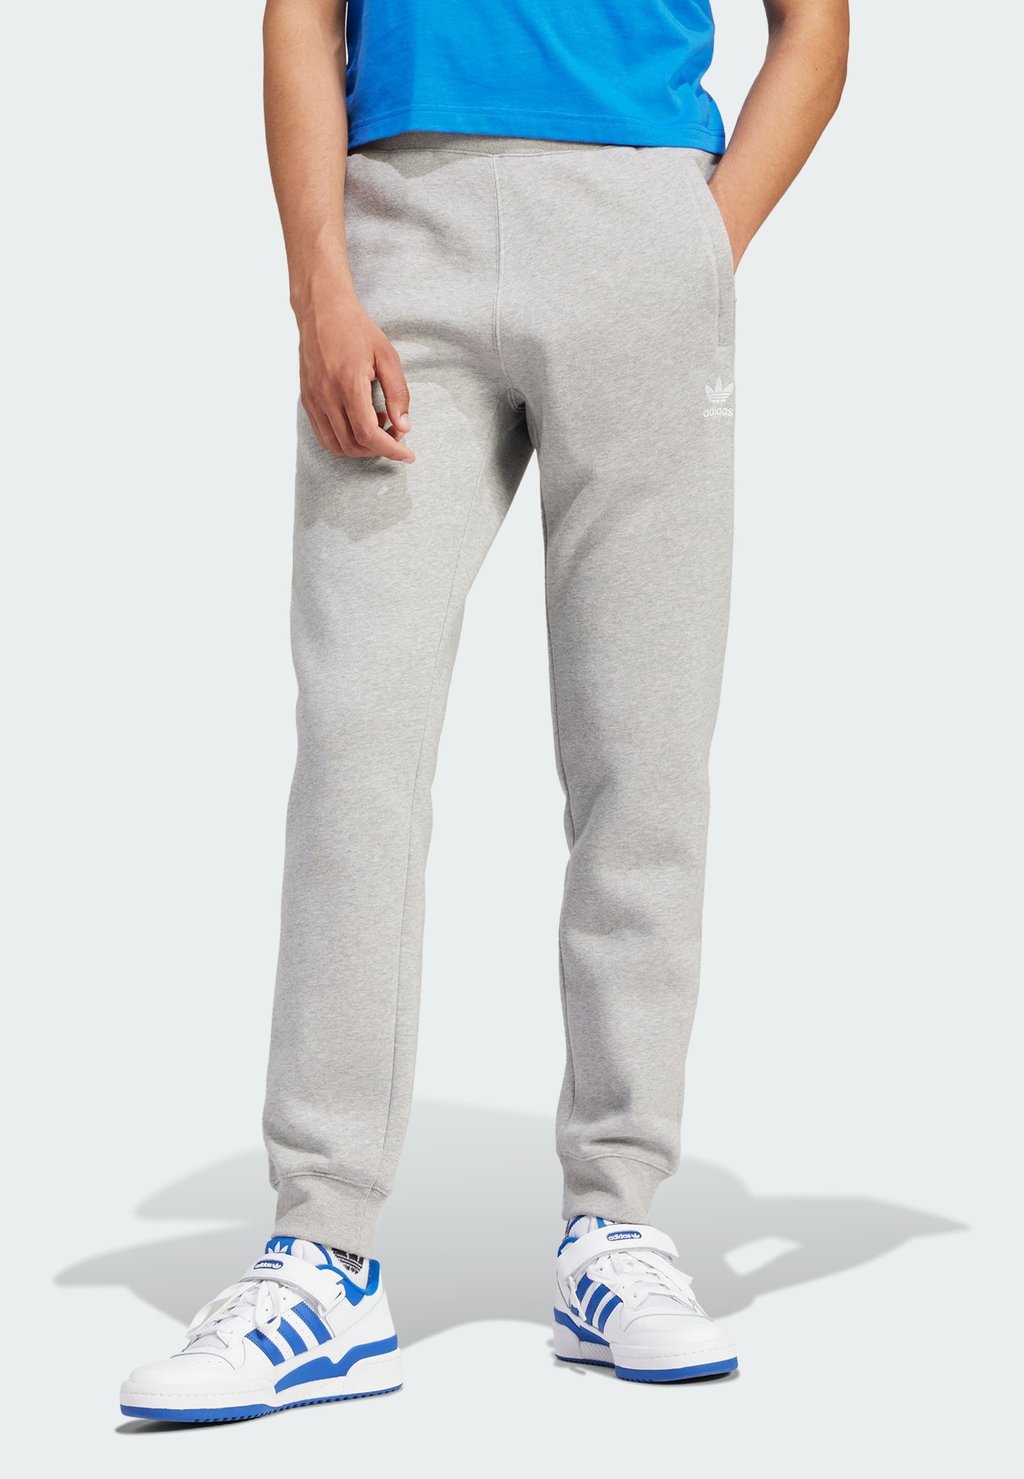 Спортивные брюки Essentials adidas Originals, цвет medium grey heather олимпийка he1993 adidas g3sfzhd medium grey heather 110